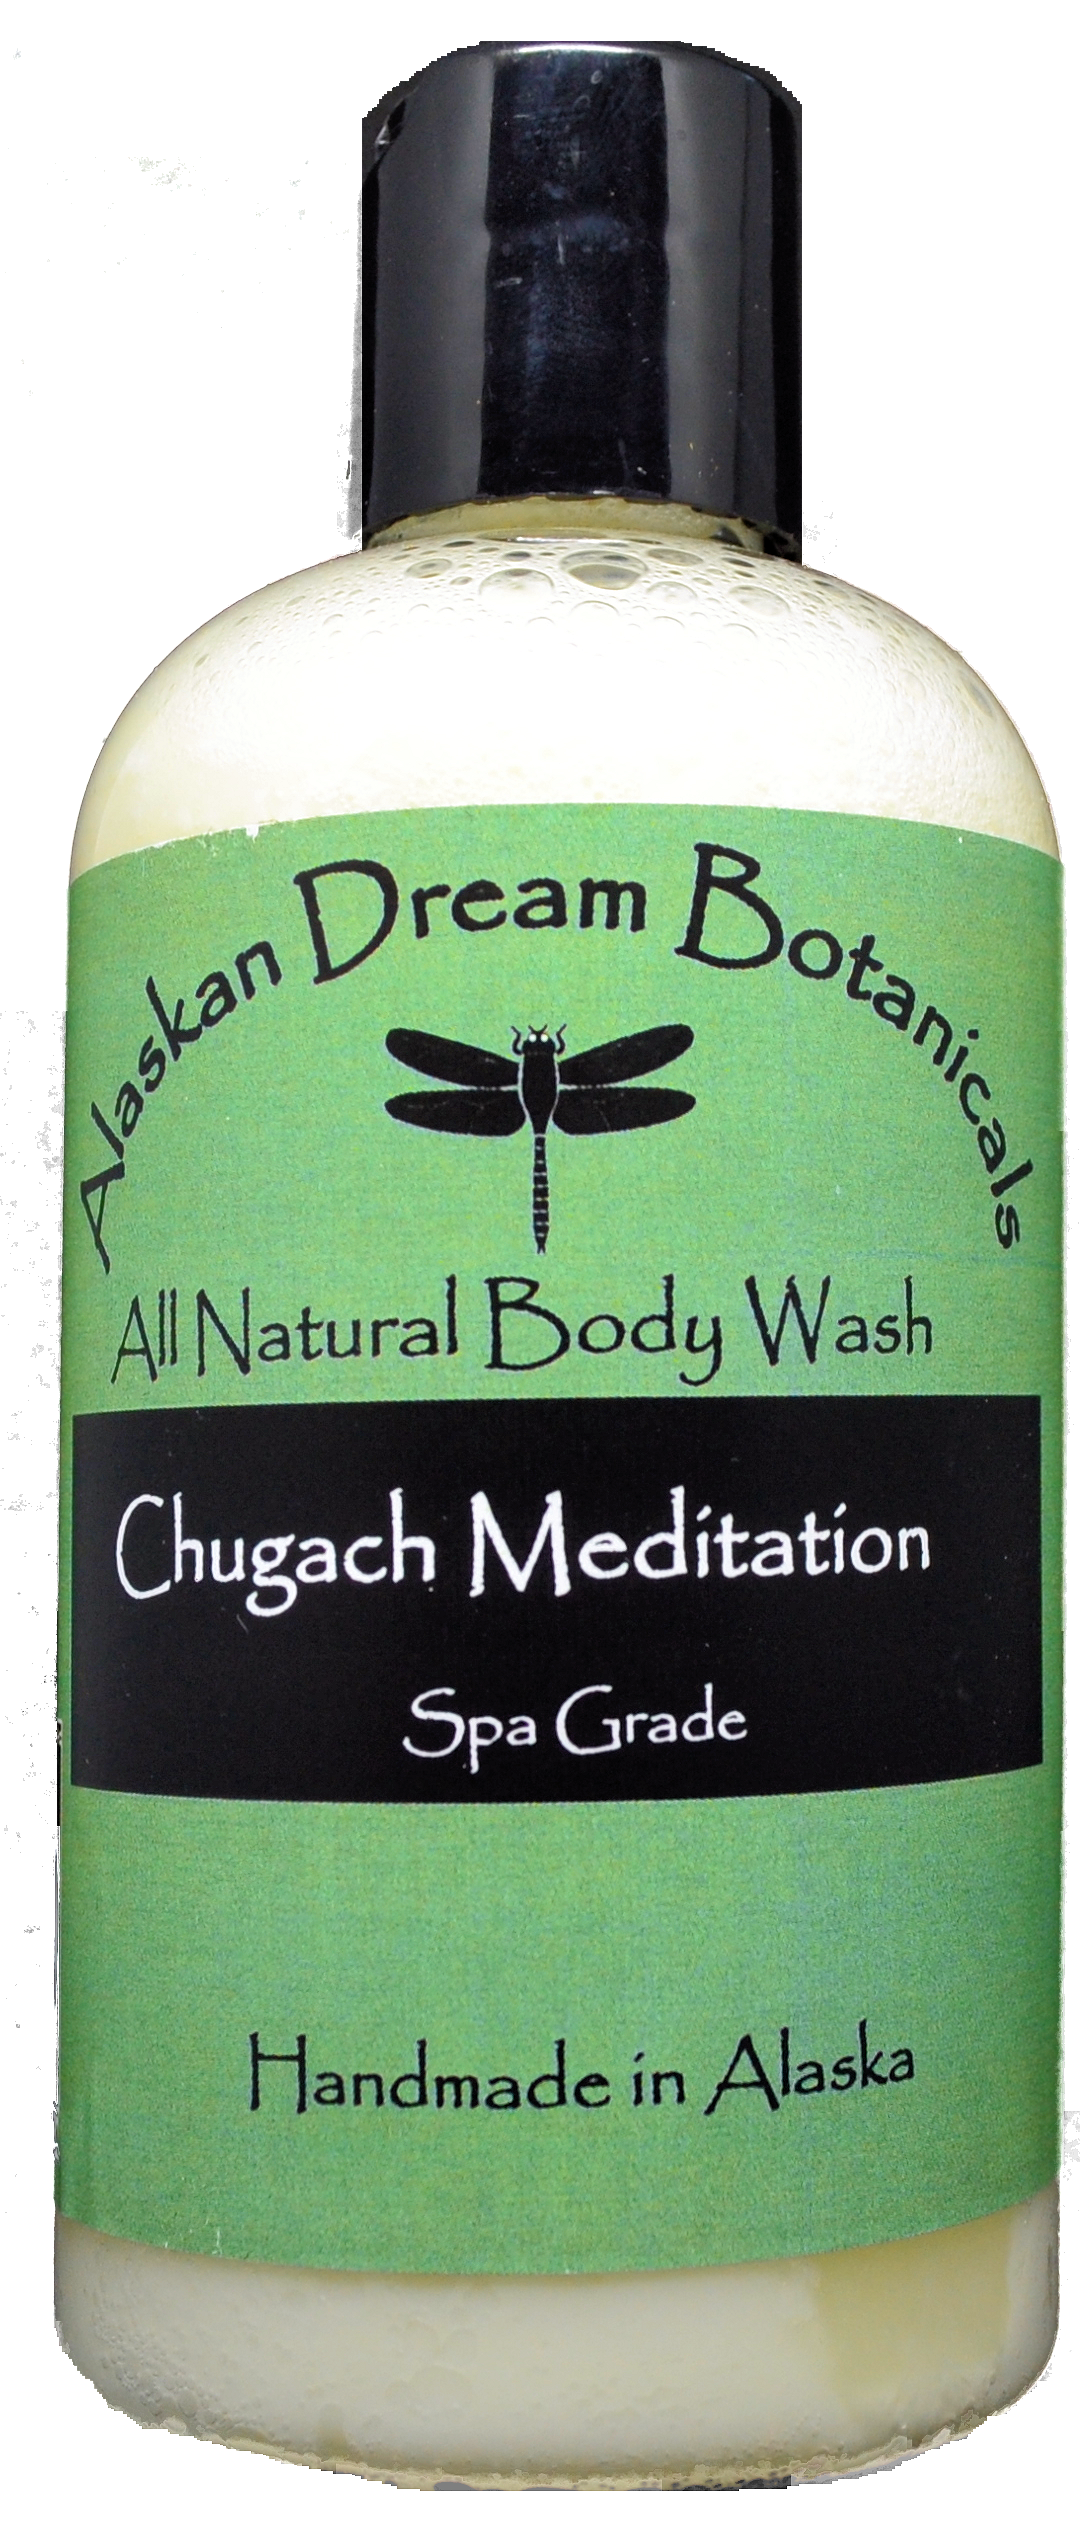 Chugach Meditation Spa Grade Body Wash - Alaskan Dream Botanicals